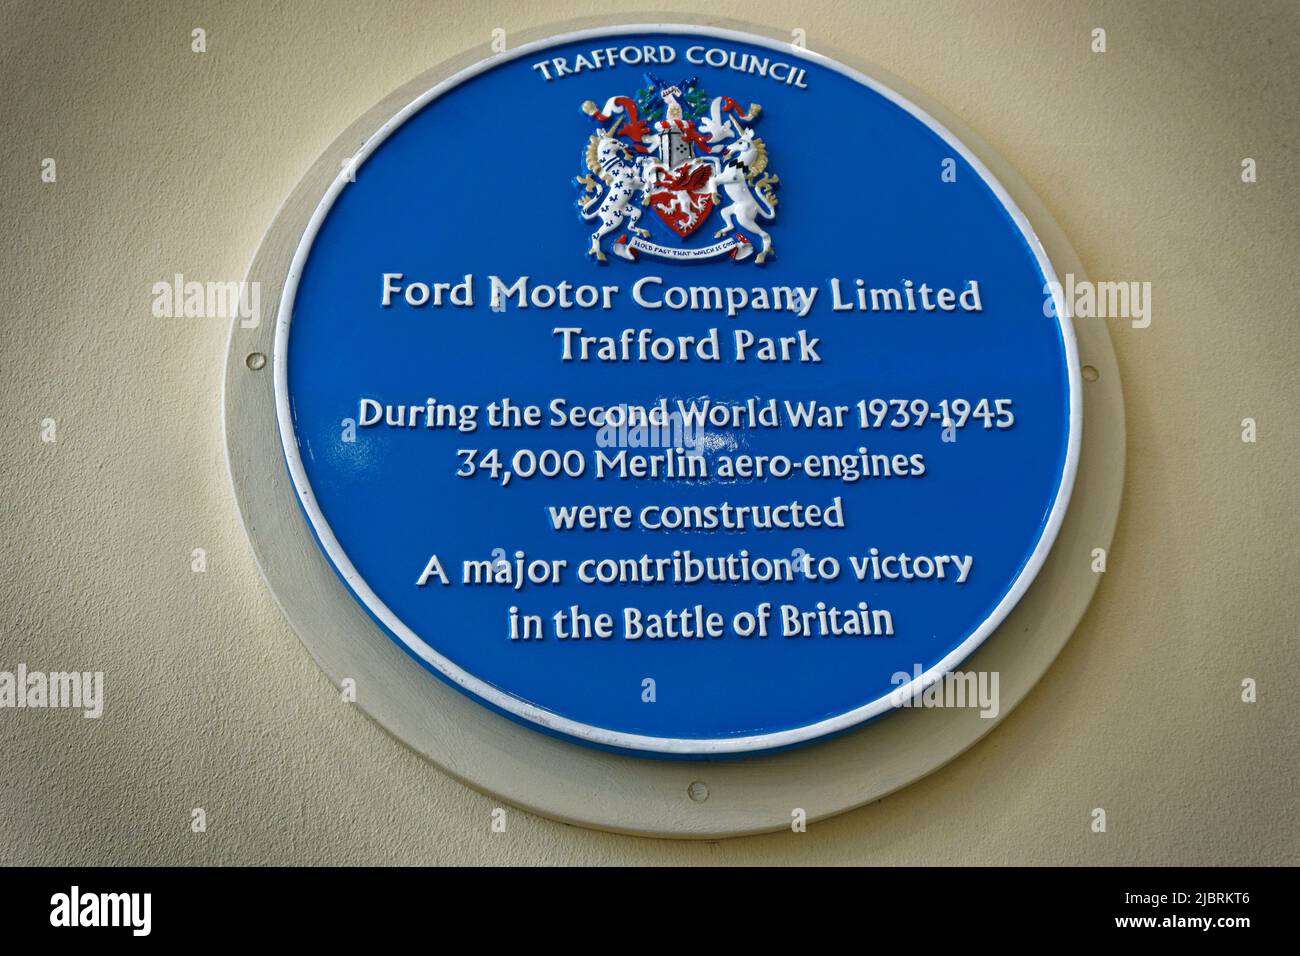 Blue Plate marcando el sitio en Trafford donde la Ford Motor Company hizo 34000 motores Merlin Aero bajo licencia de Rolls Royce durante la Guerra Mundial 2. Foto de stock